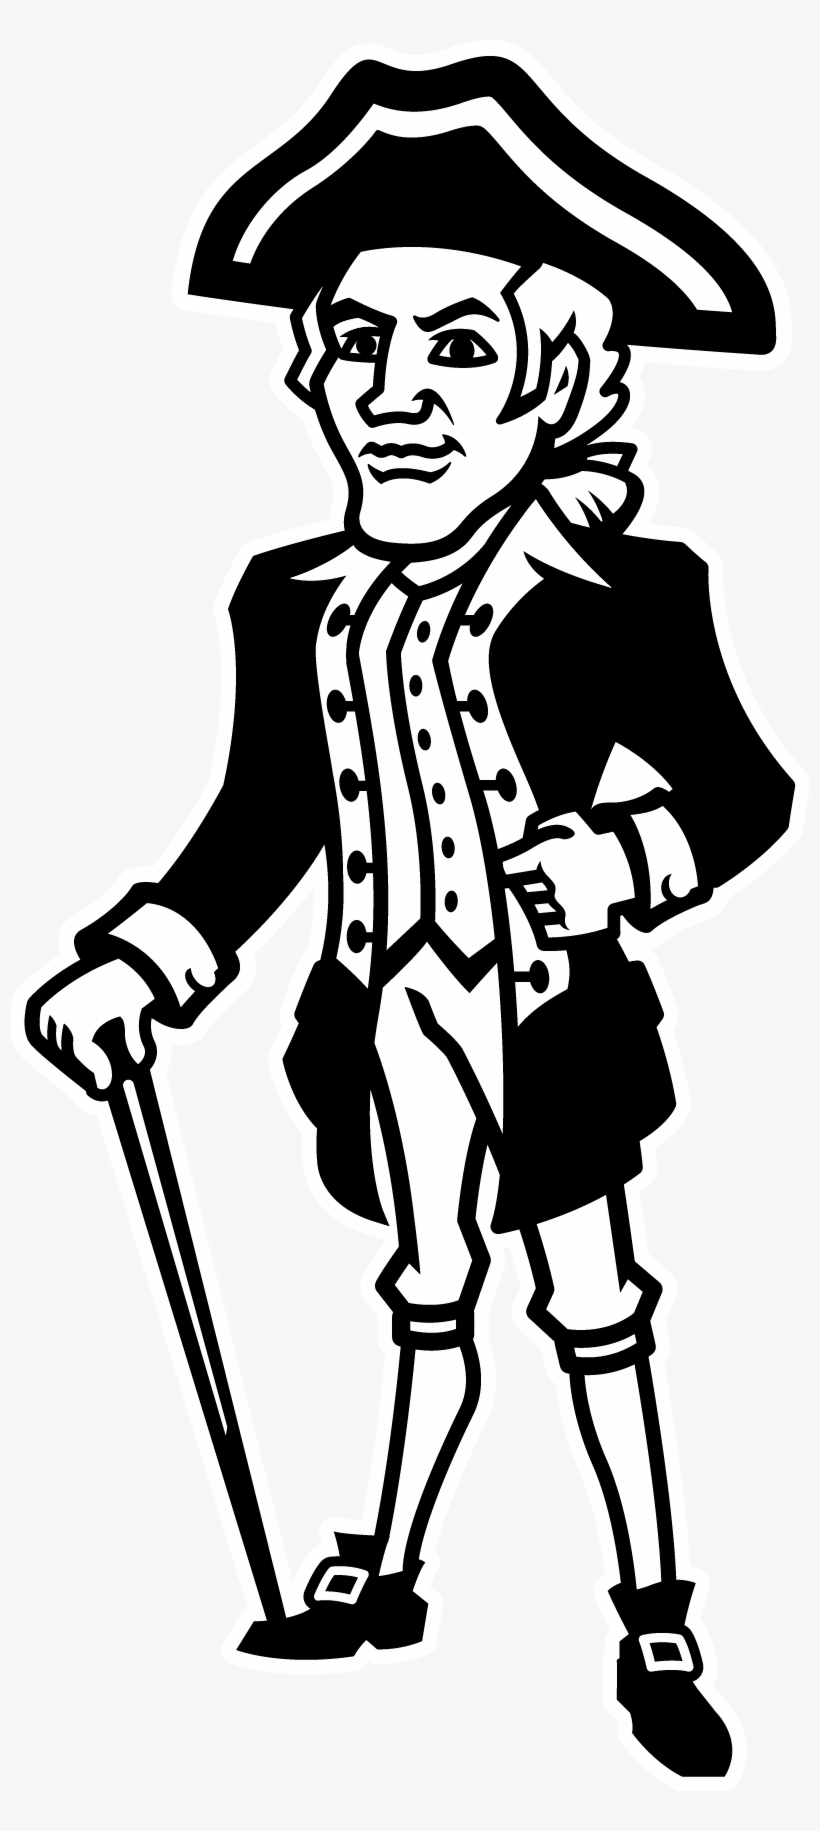 Alexander Hamilton Drawing At Getdrawings - Alexander Hamilton Cartoon Drawing, transparent png #2010538